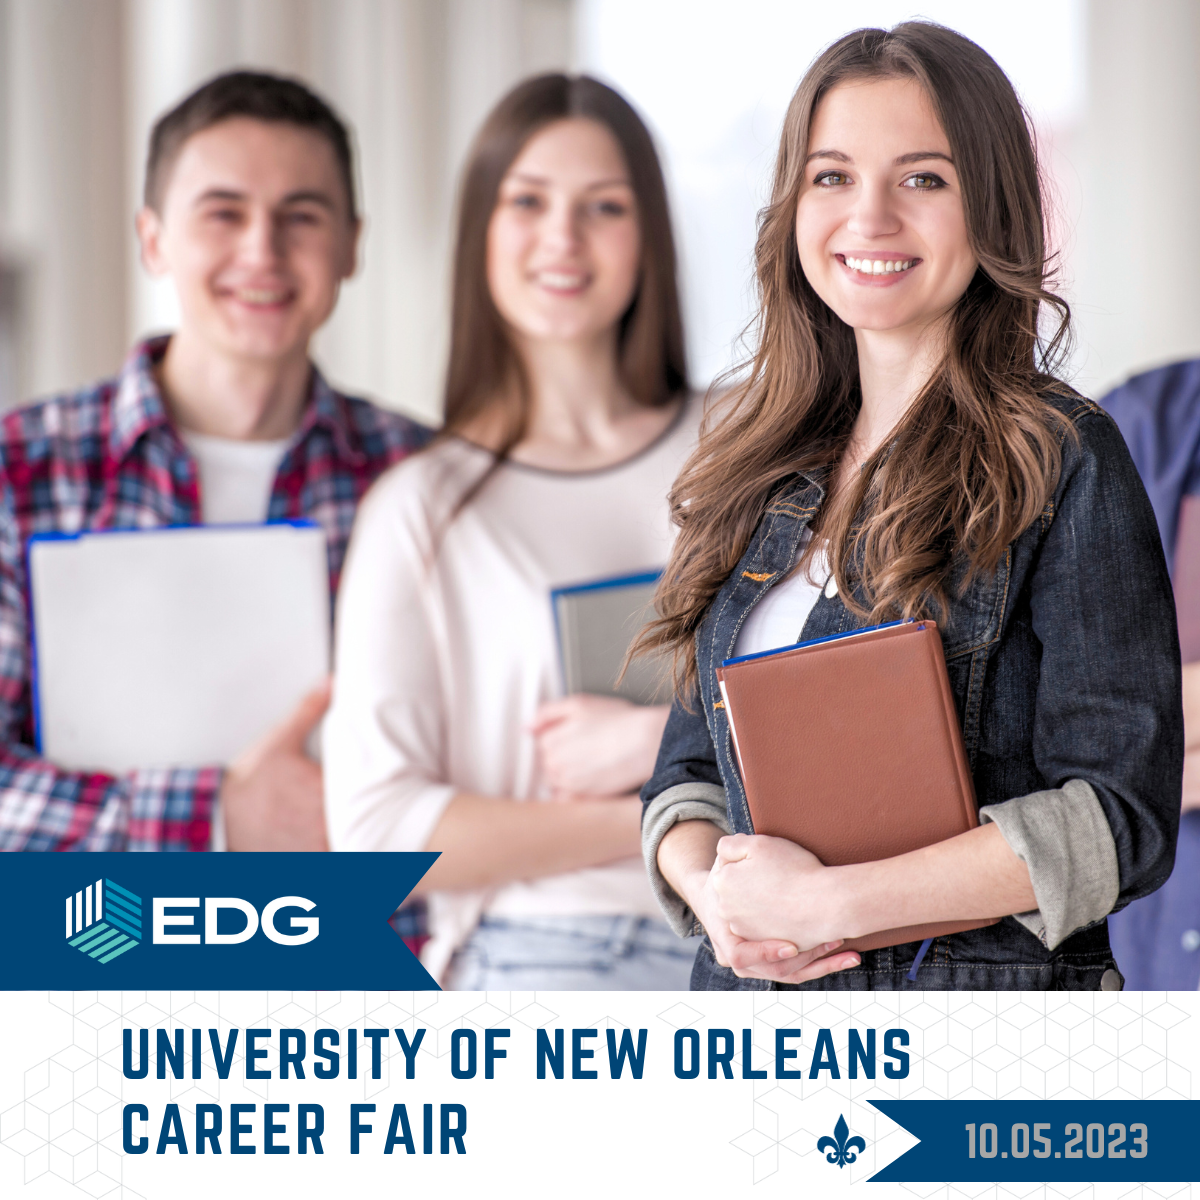 EDG at University of New Orleans Career Fair